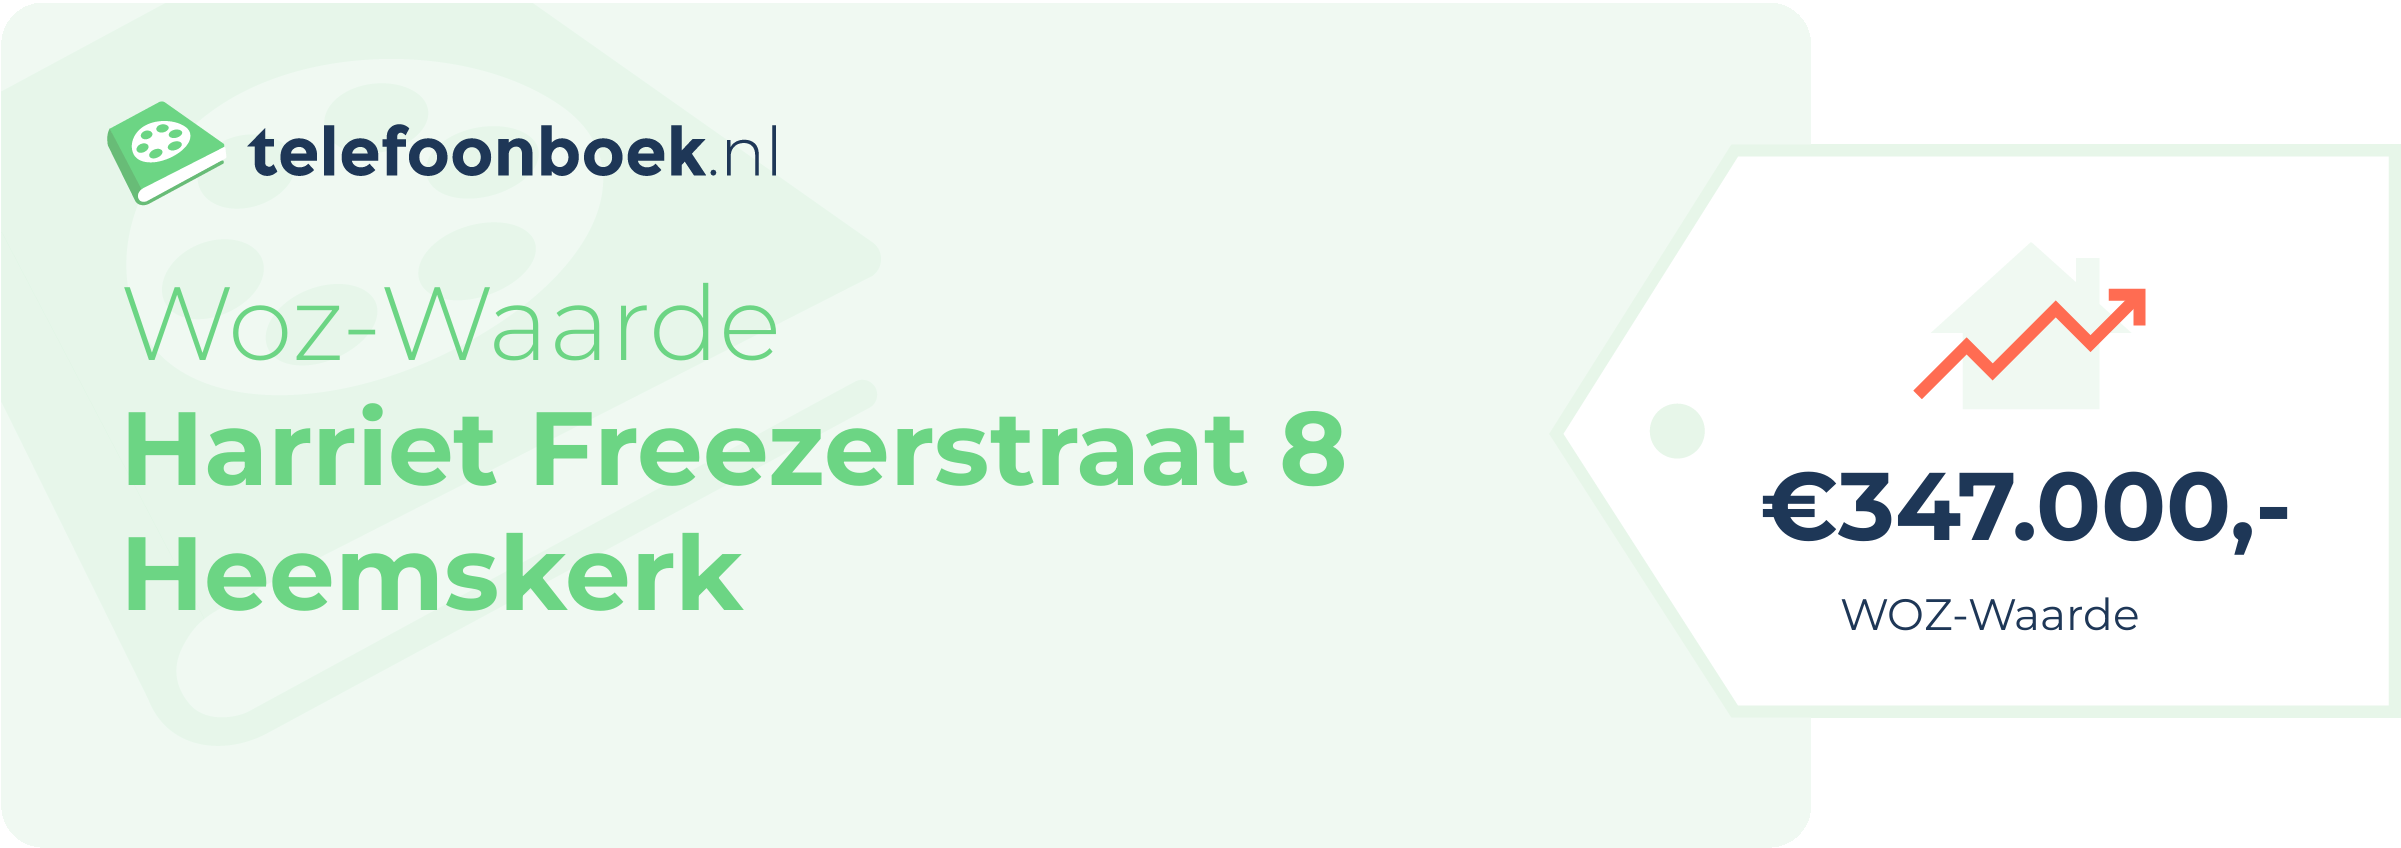 WOZ-waarde Harriet Freezerstraat 8 Heemskerk